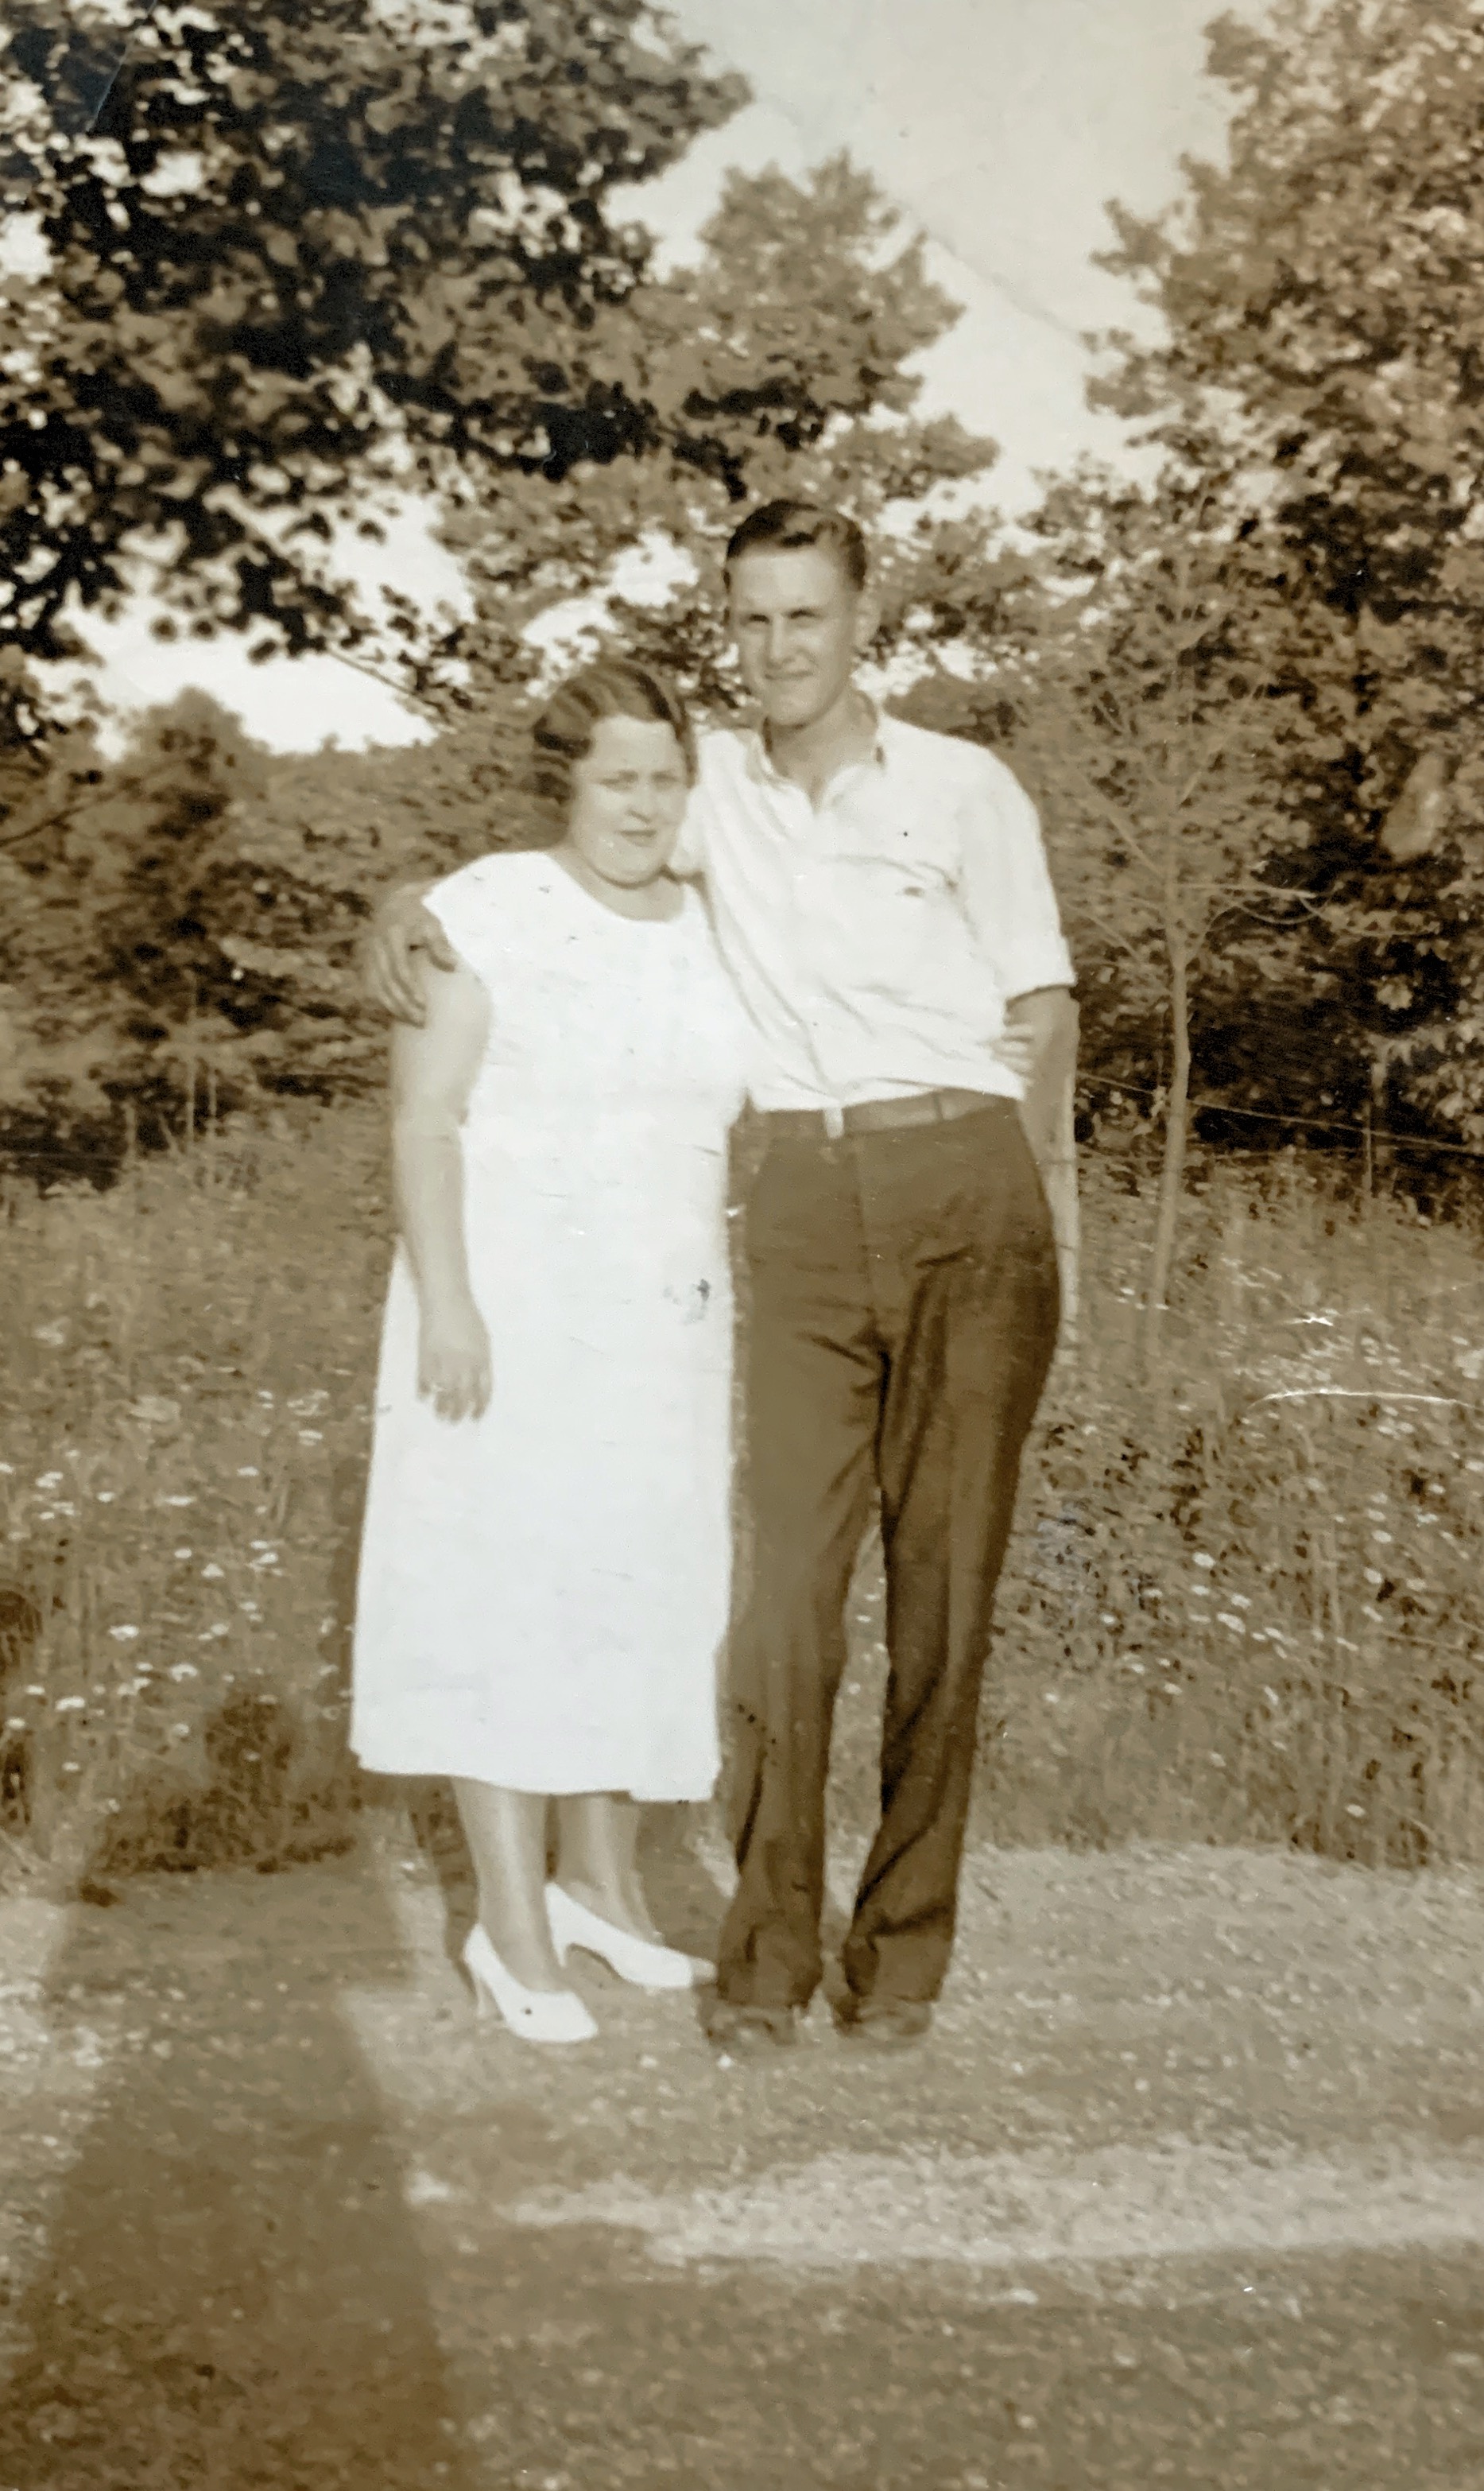 John Carl and Stella about 1930